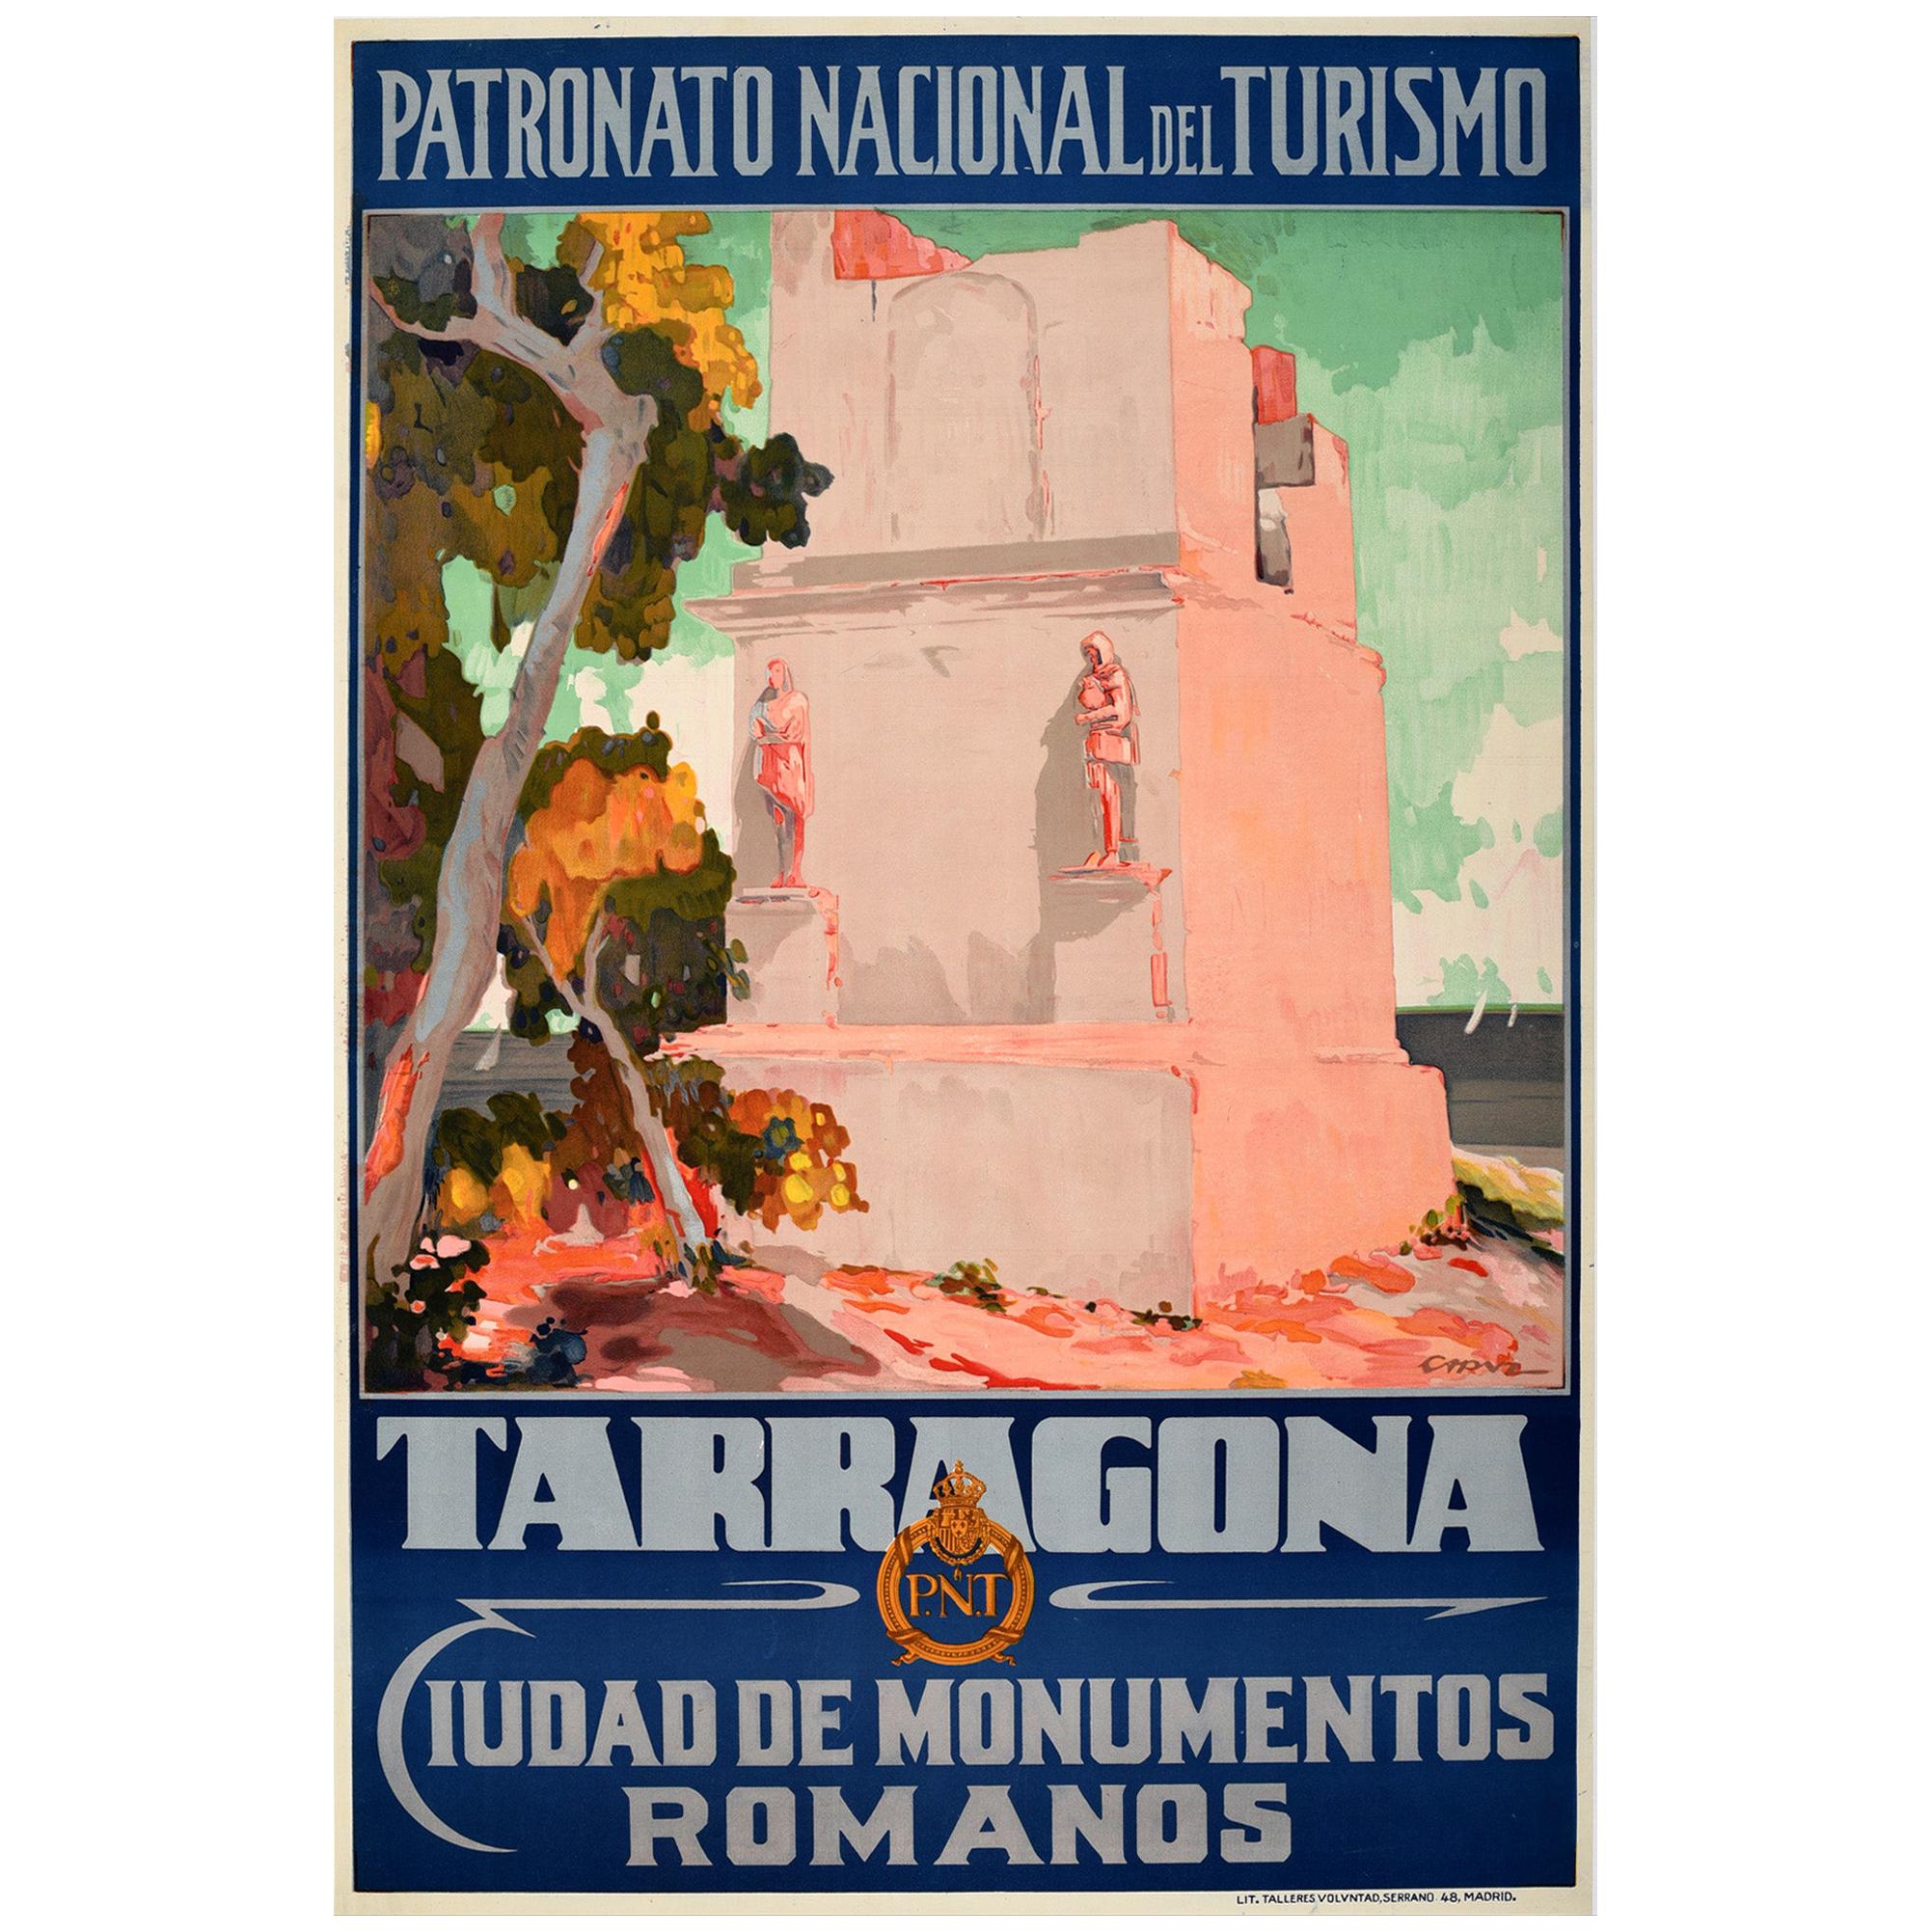 Original Vintage Travel Poster Tarragona Roman Monuments Torre De Los Escipiones For Sale